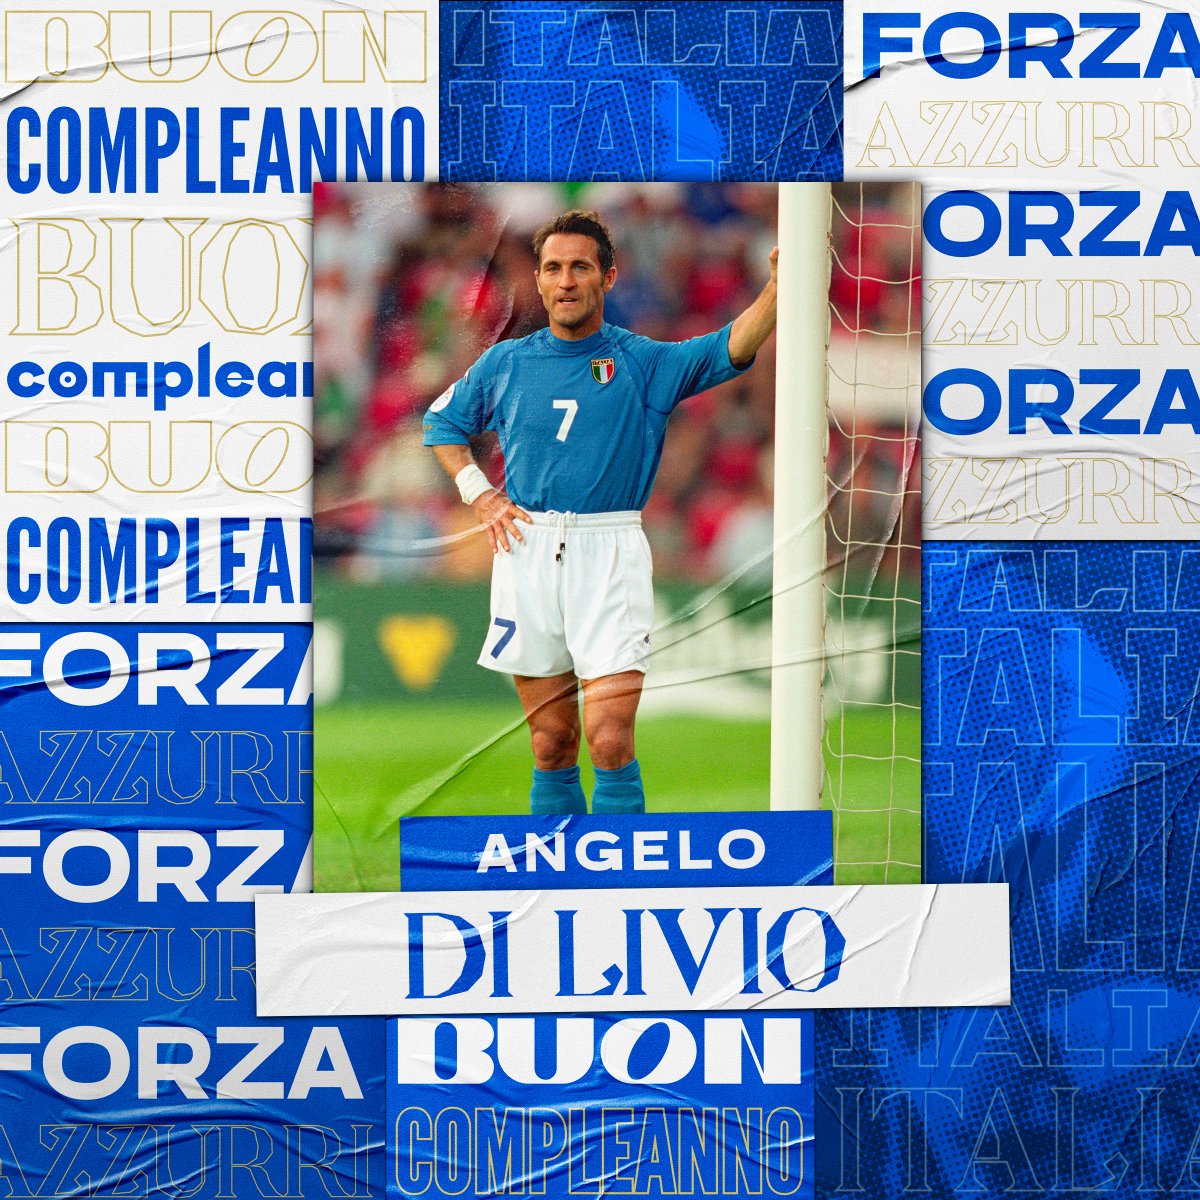 📷 Buon compleanno a Angelo Di Livio📷 Compie 📷📷 anni il centrocampistaIn che in azzurro ha preso parte a due spedizioni europee ed altrettante mondiali 40 presenze in Nazionale 📷